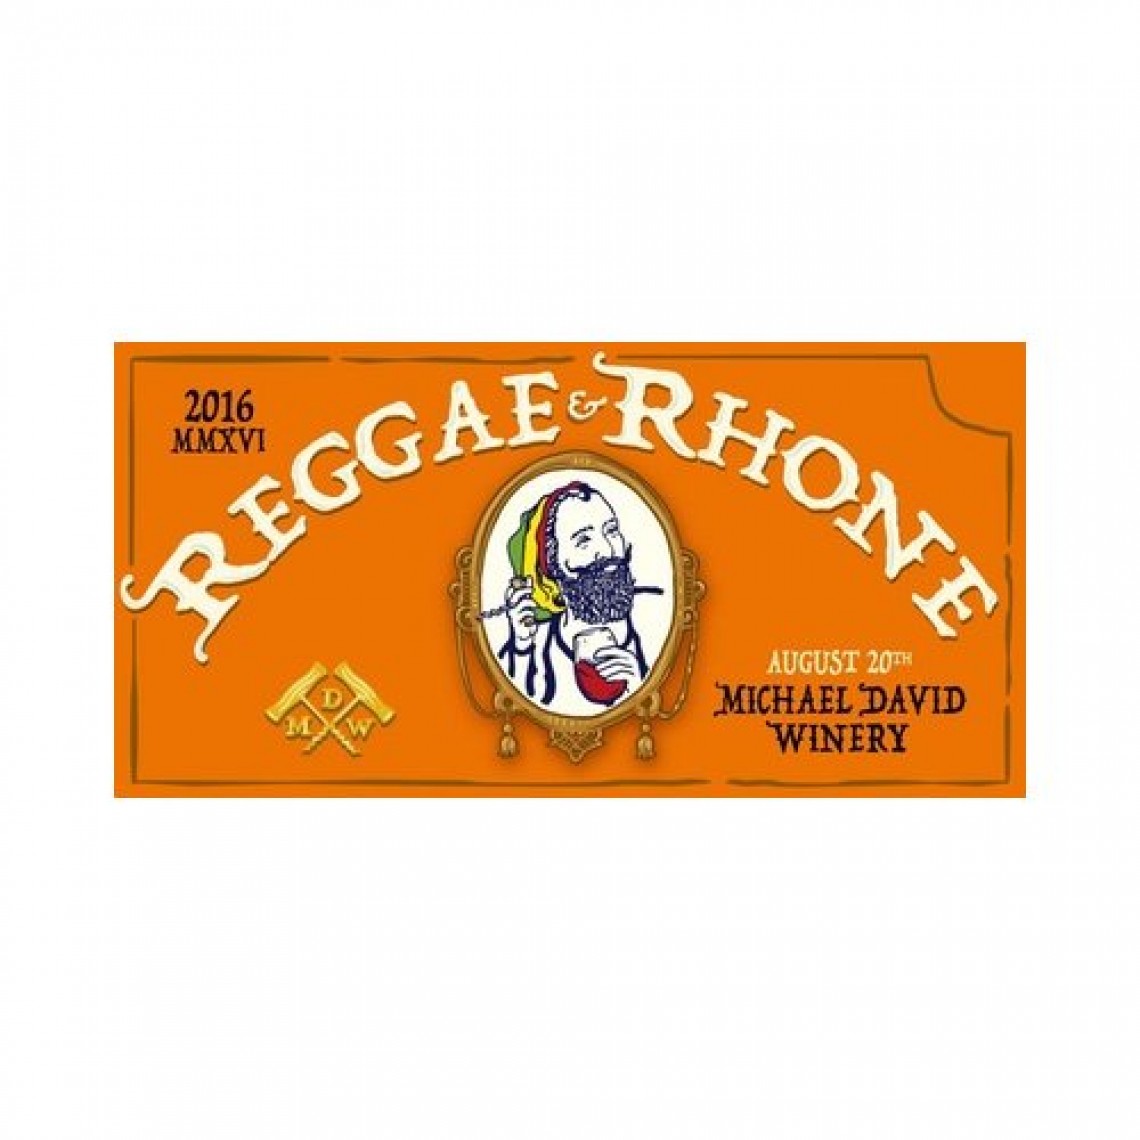 Reggae & Rhone 2016